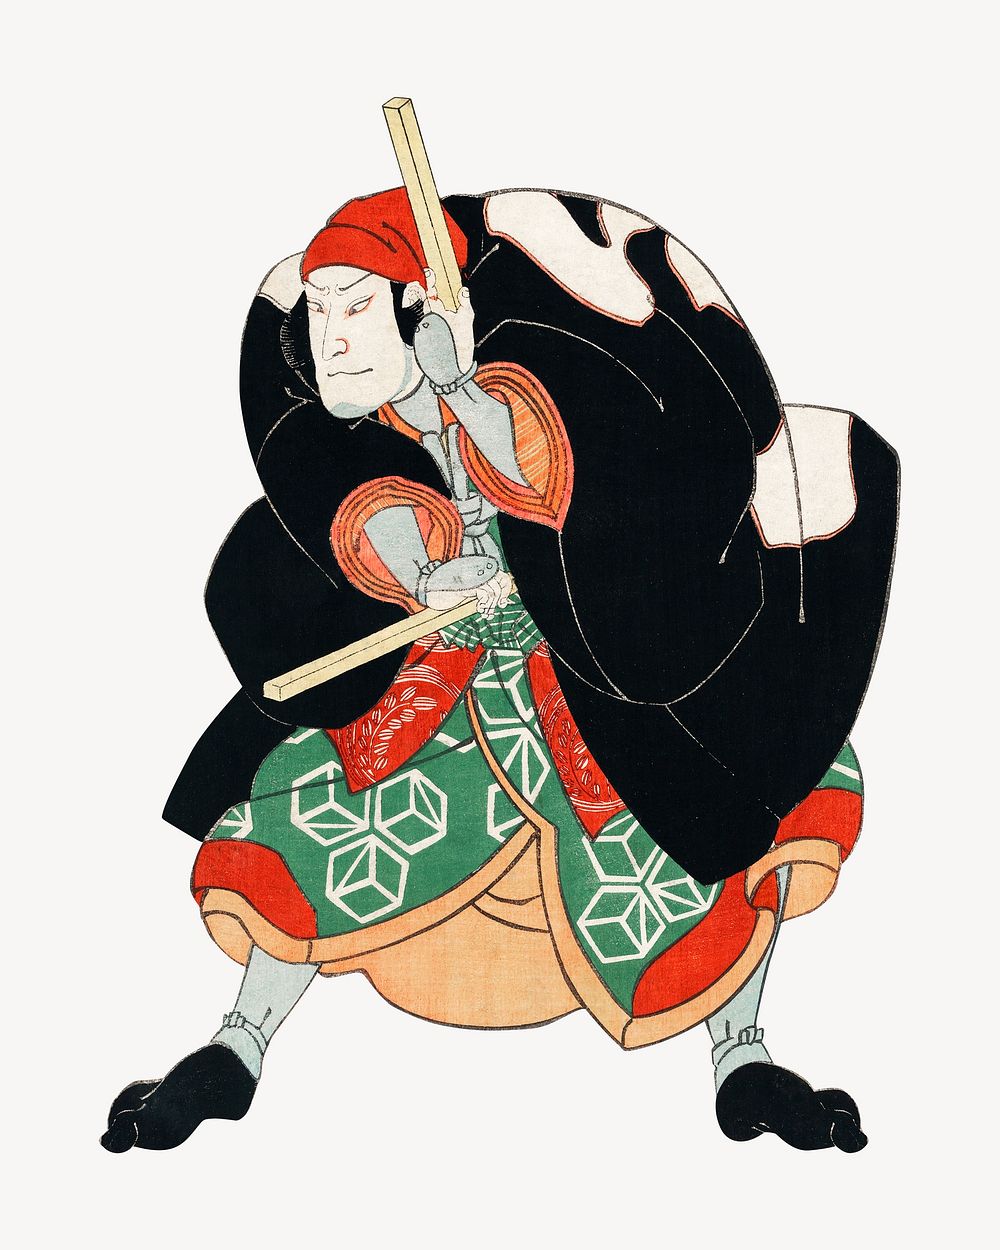 Namiwa Jirosaku, Japanese ukiyo-e woodblock print by Utagawa Kuniyoshi. Remixed by rawpixel.